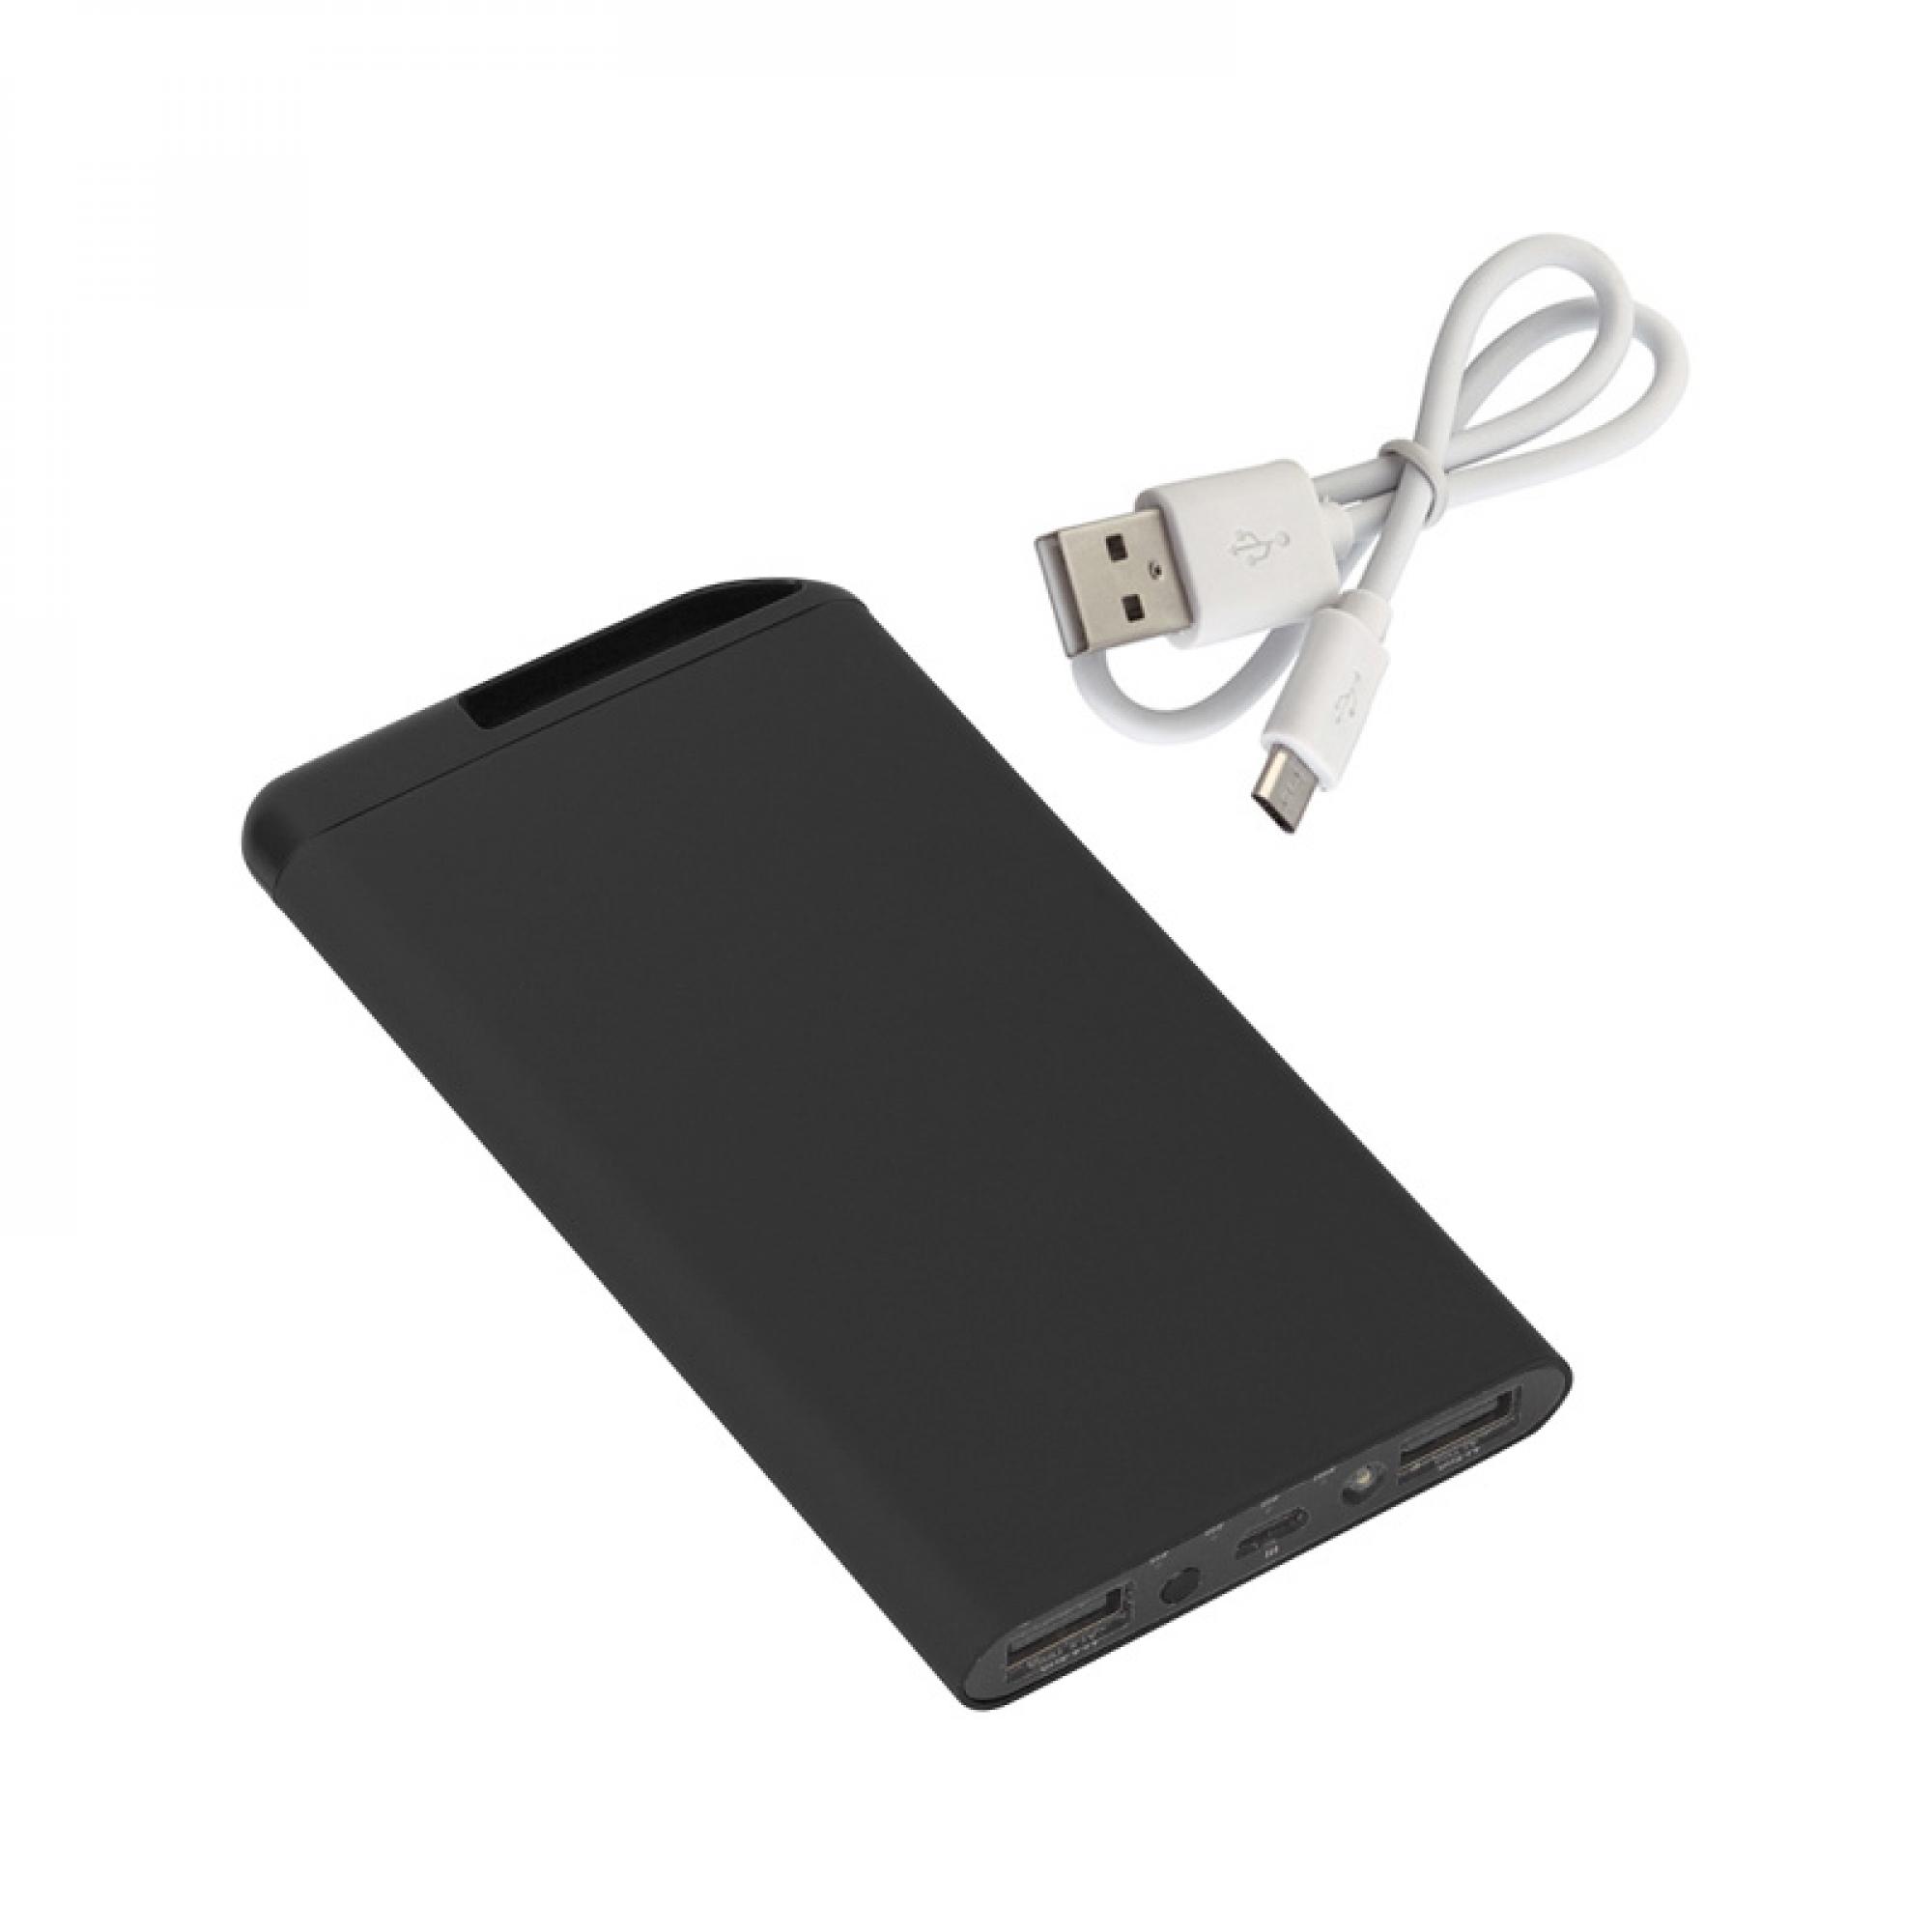 Зарядное устройство "Theta", 6000 mAh, 2 выхода USB, покрытие soft touch, цвет черный, фото 1